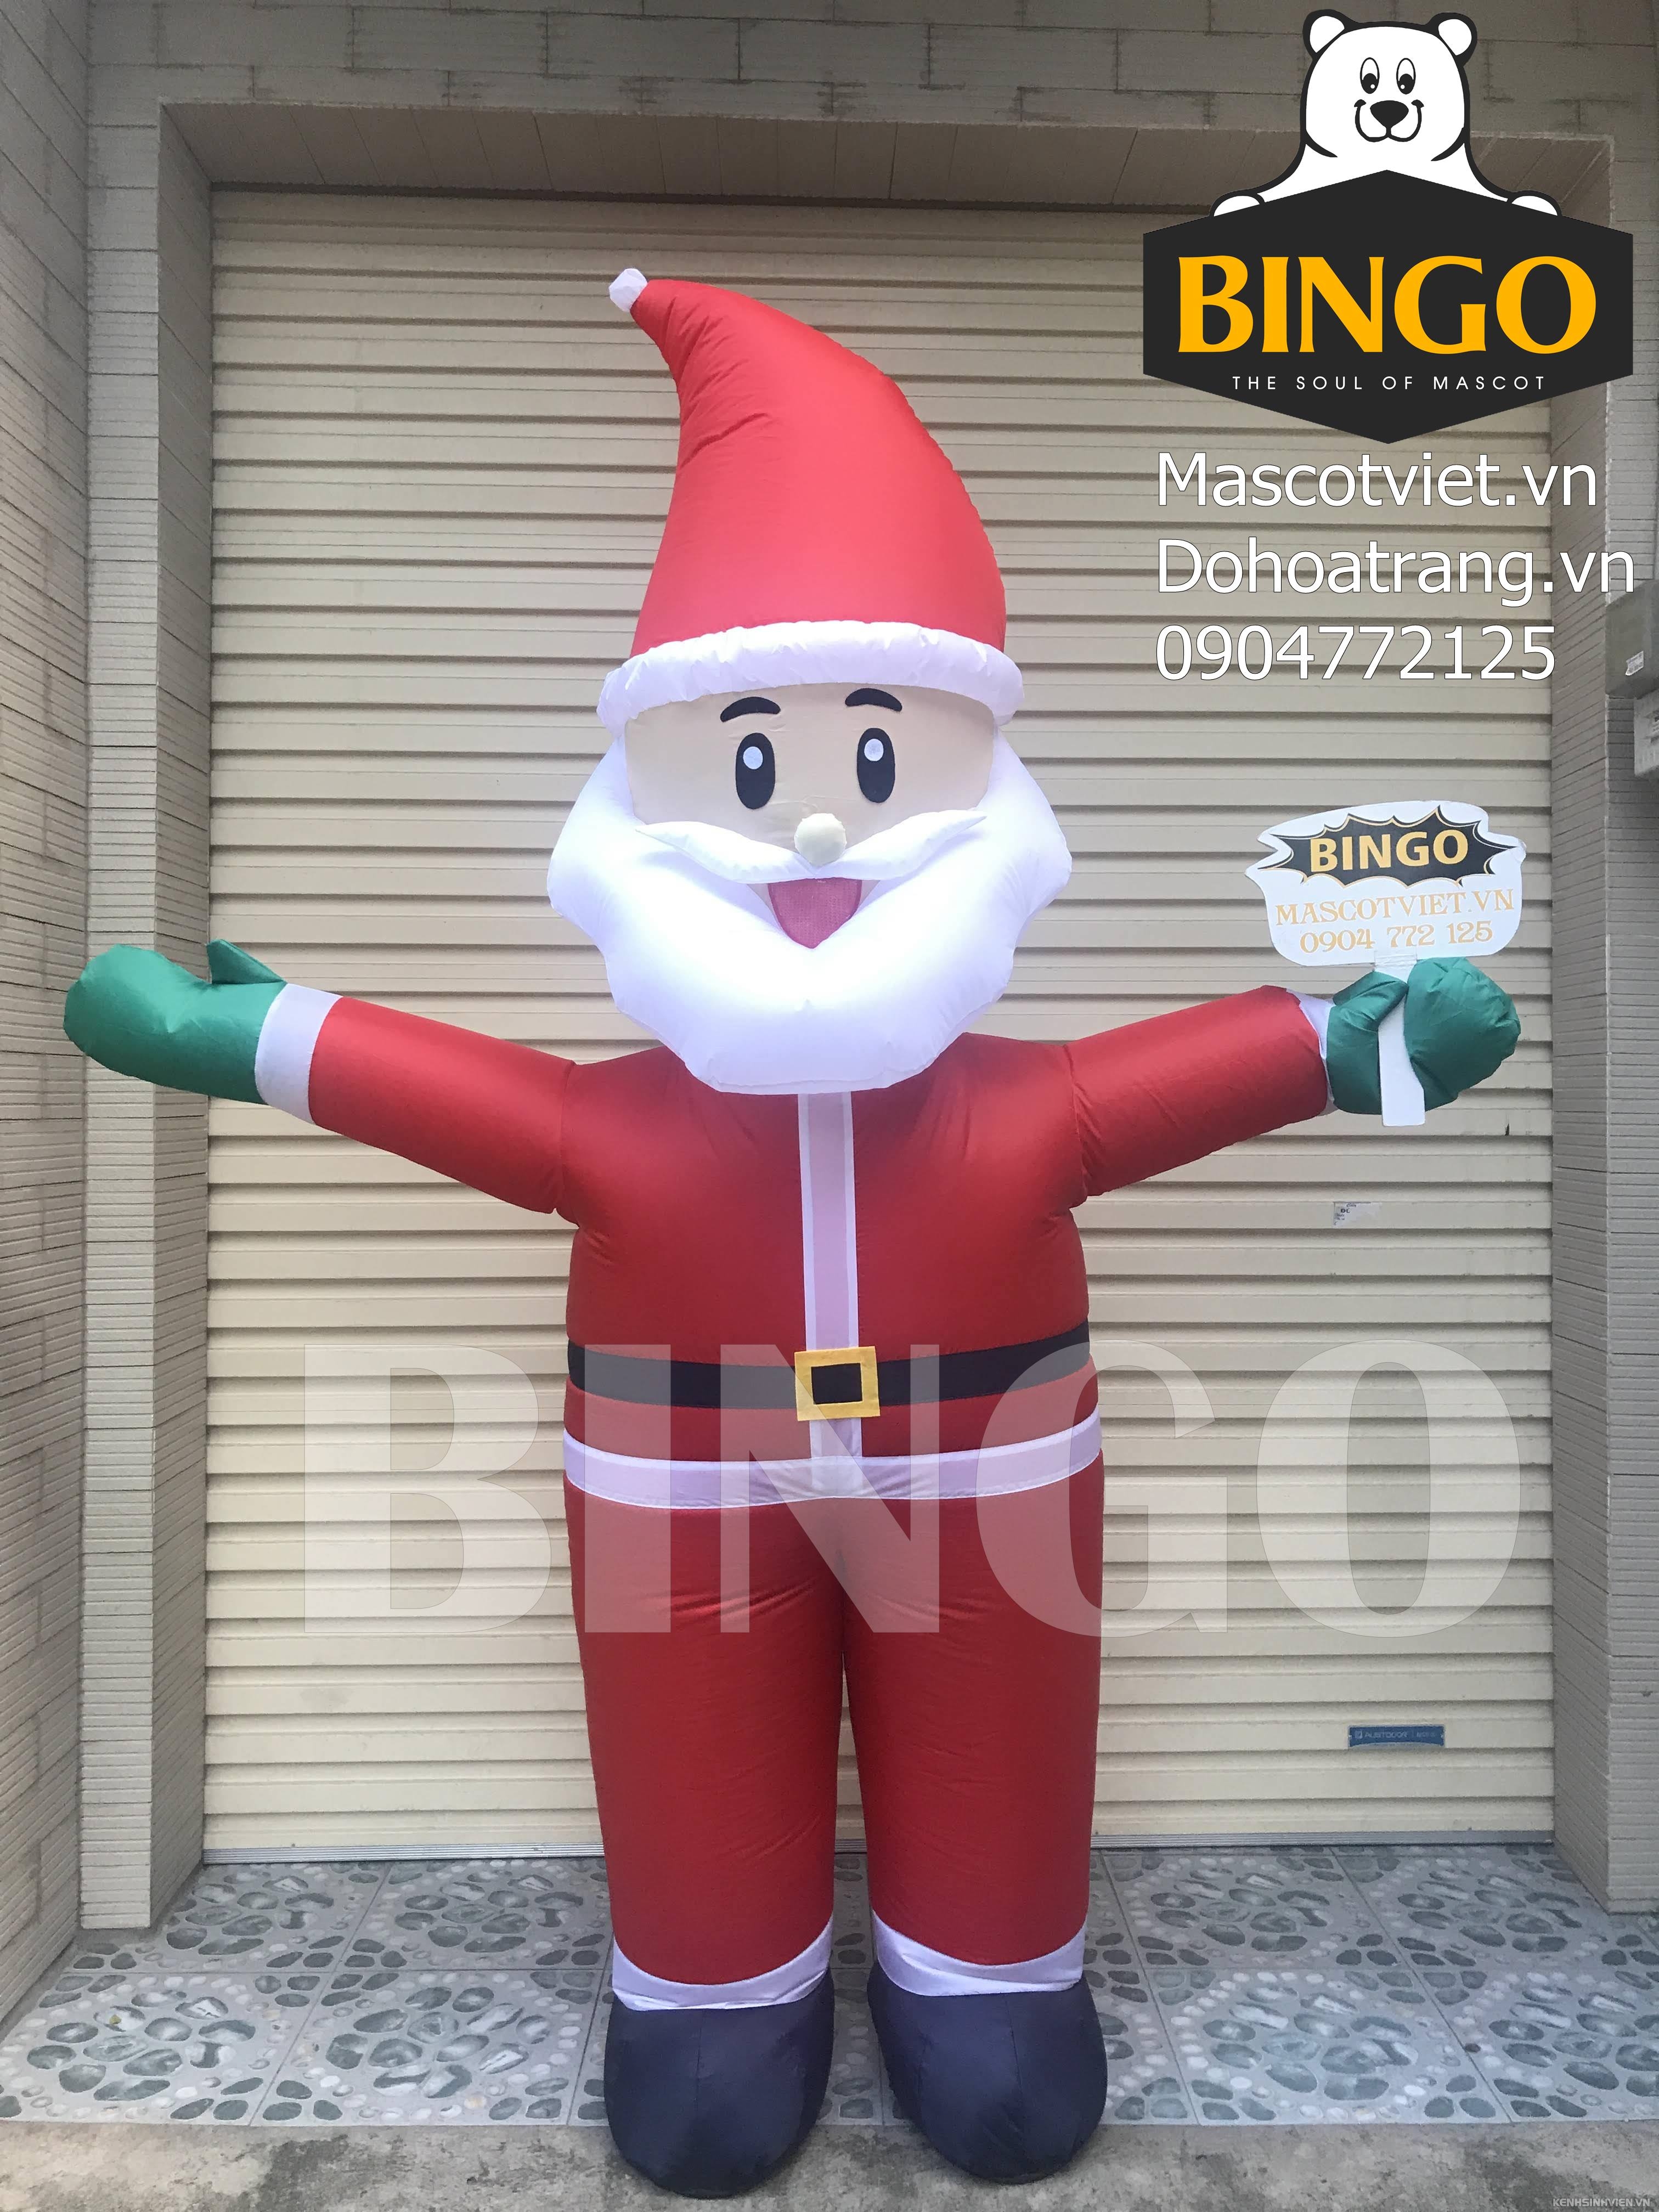 mascot-hoi-ong-gia-noel-bingo-costumes-0904772125.jpg